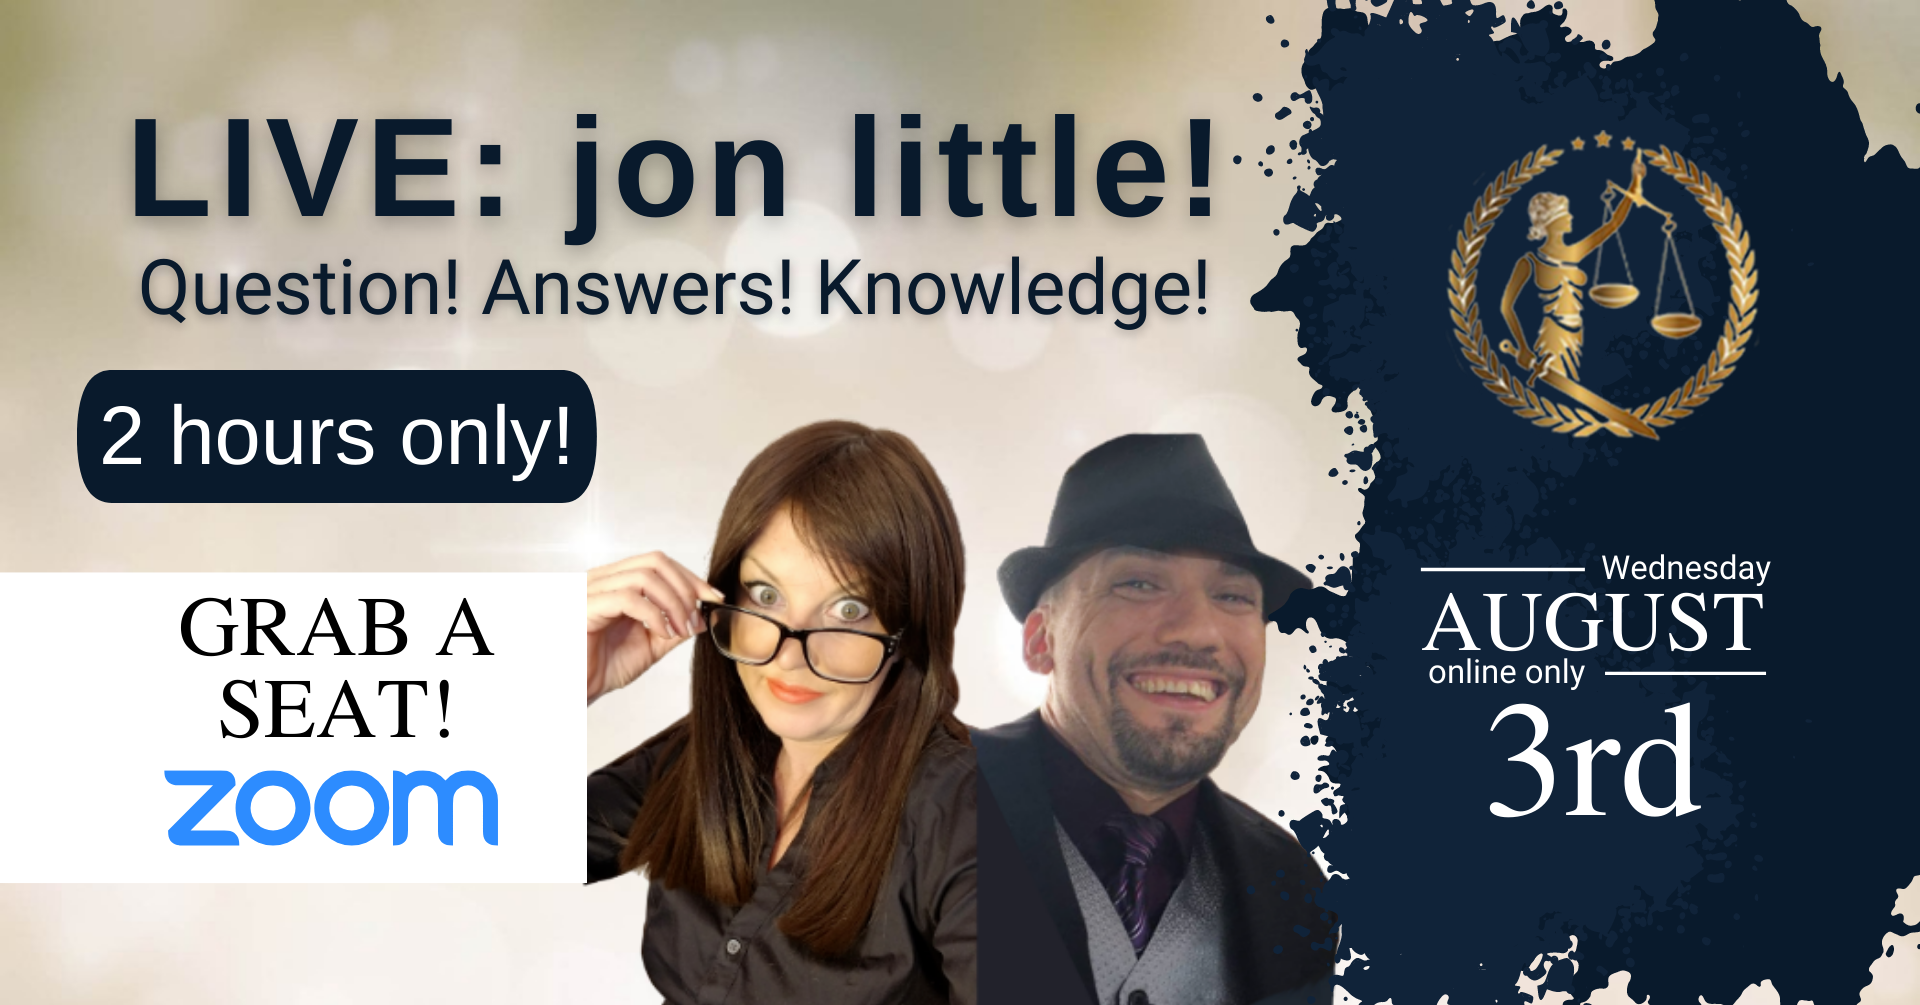 Q&A Live w/jon little, Online Event